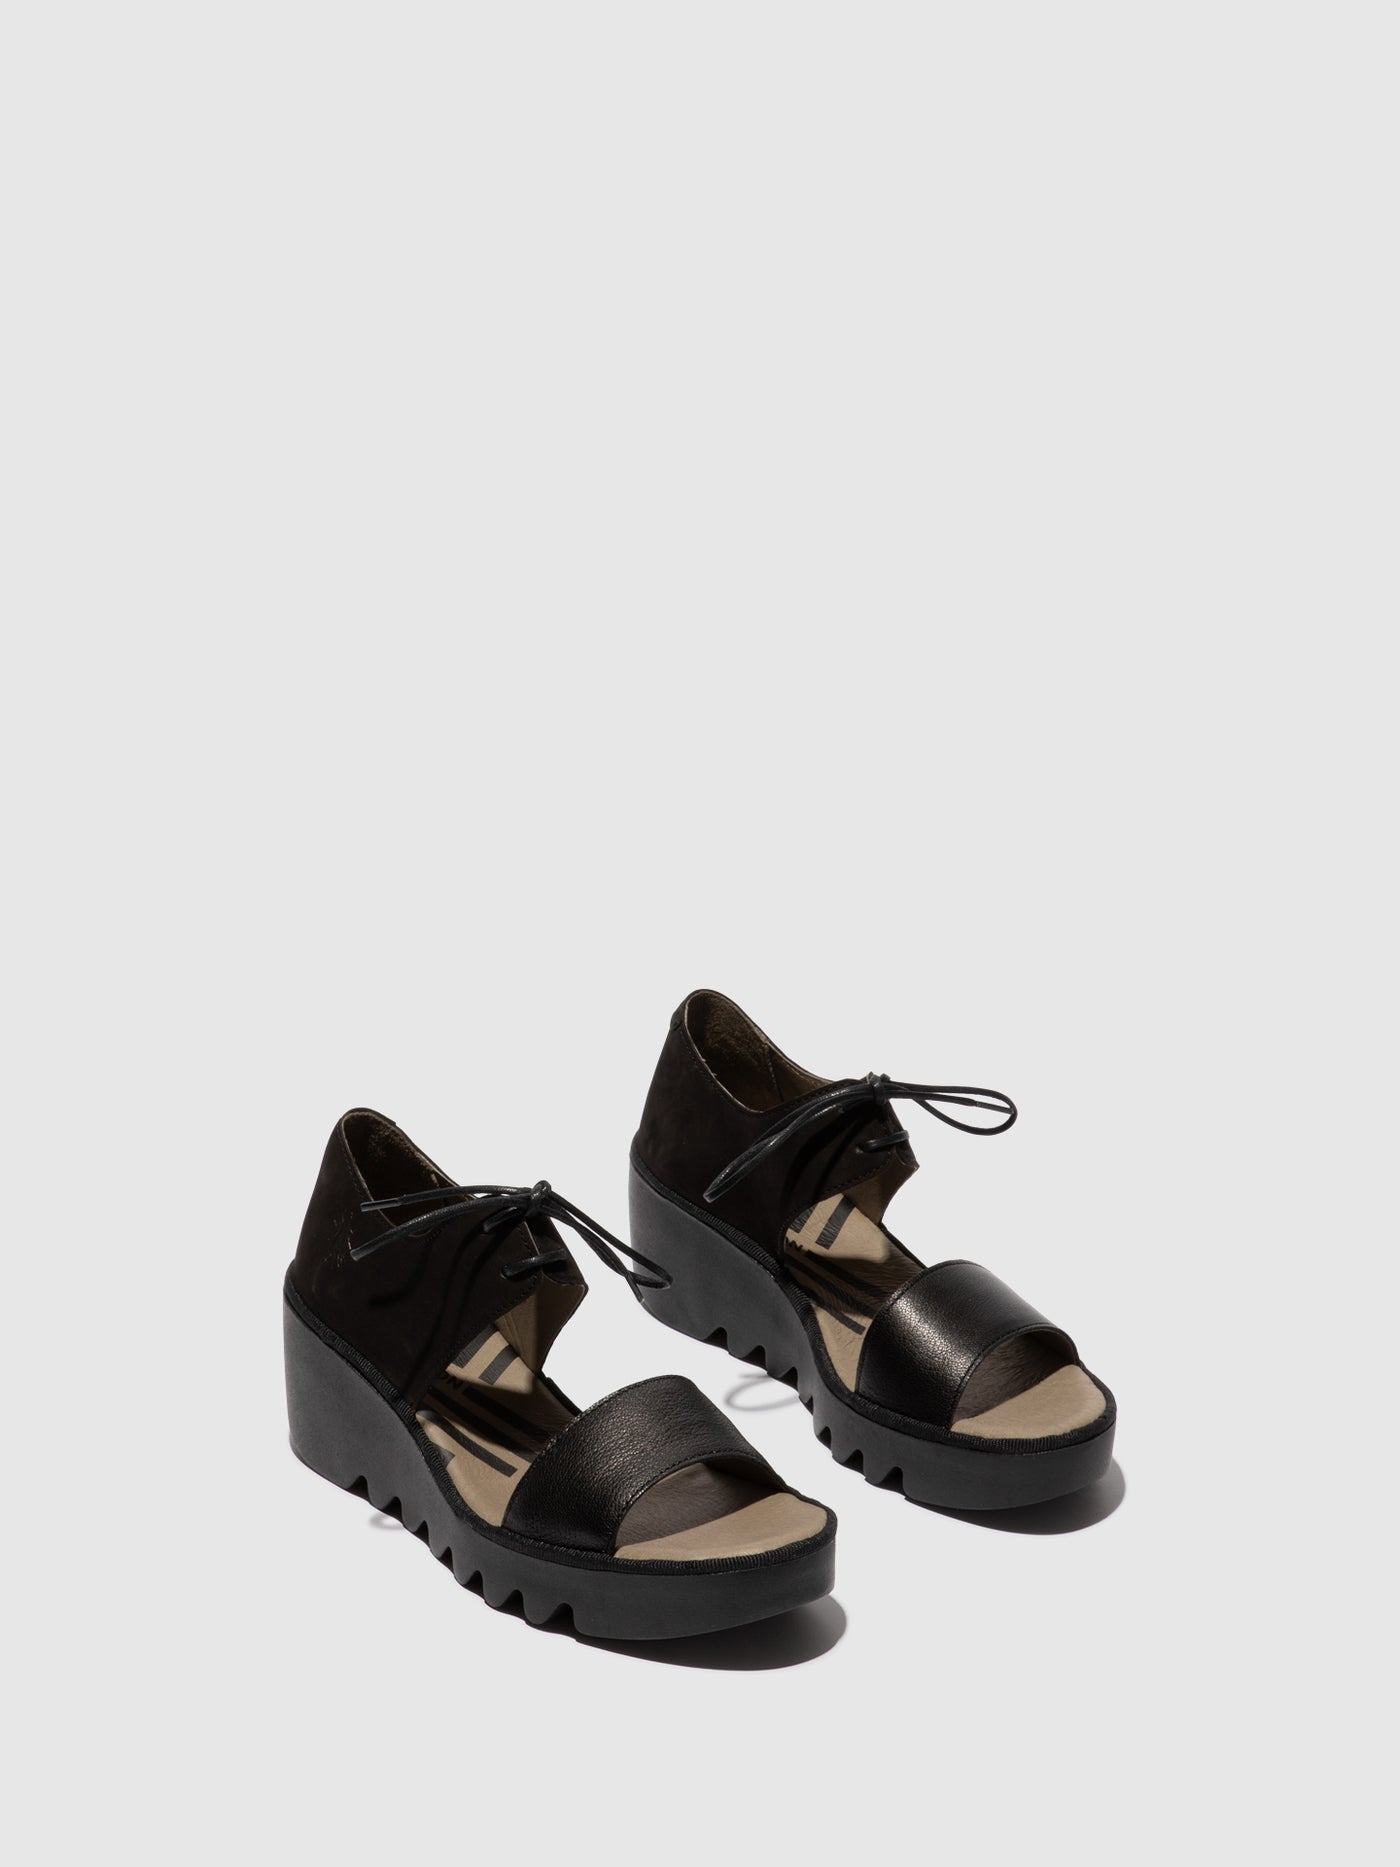 Lace-up Sandals BILU465FLY BLACK/BLACK